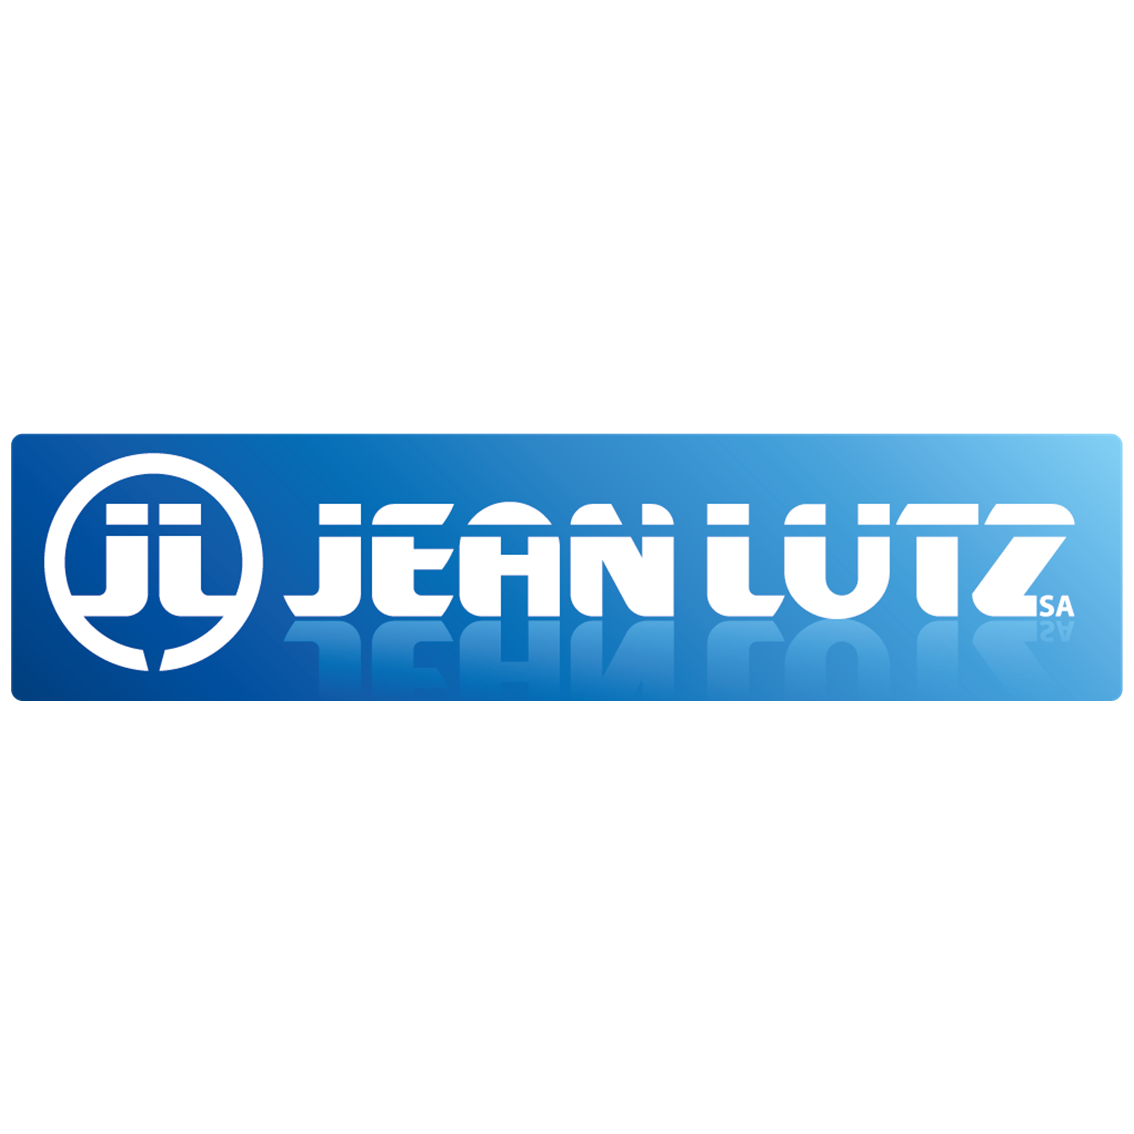 Jean Lutz